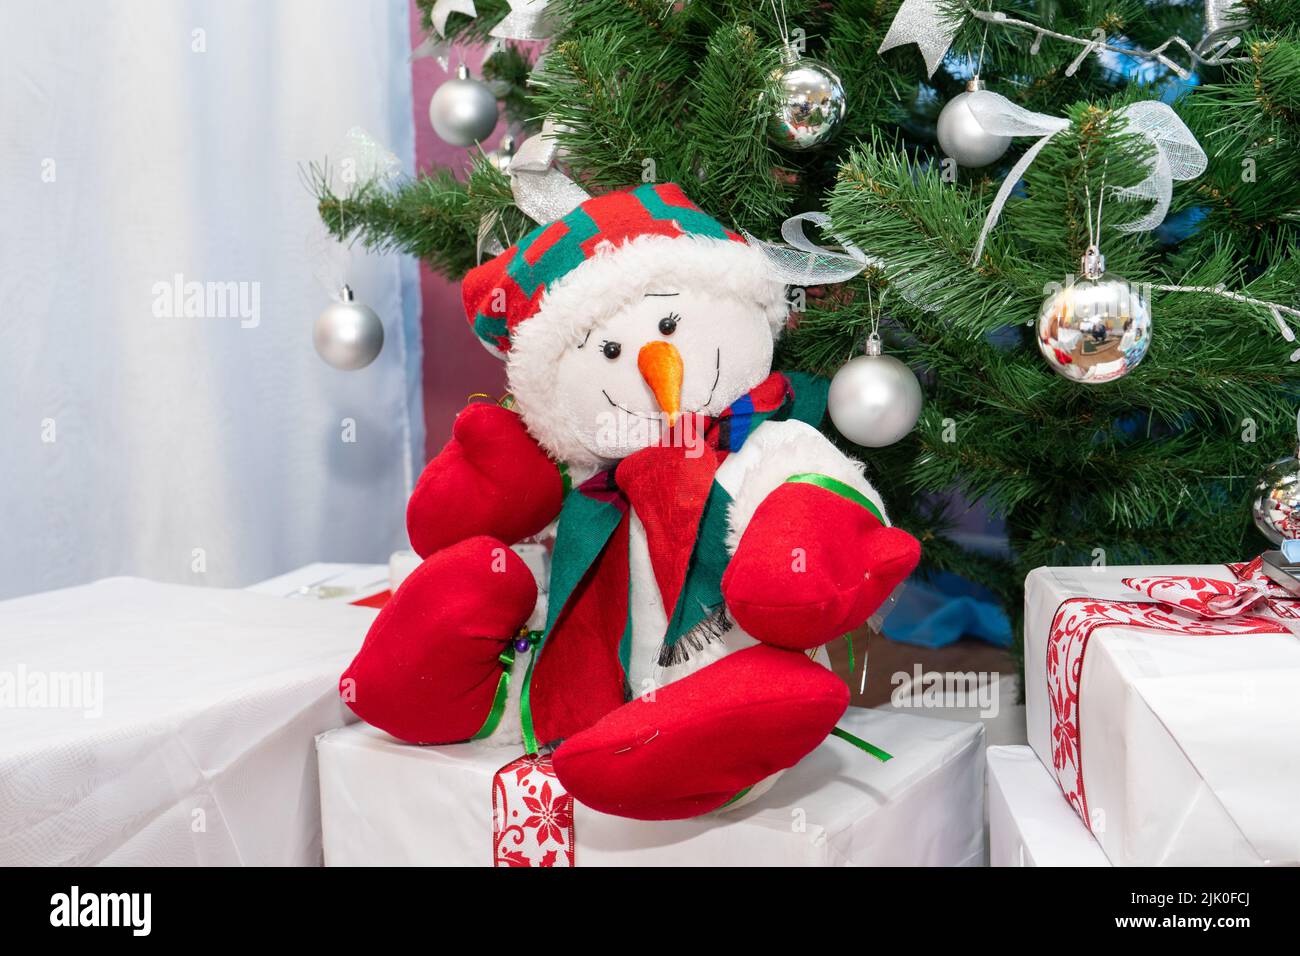 Un bonhomme de neige joyeux s'assoit sur des cadeaux sous l'arbre de Noël.  Conception d'hiver des locaux de l'école pour enfants Photo Stock - Alamy